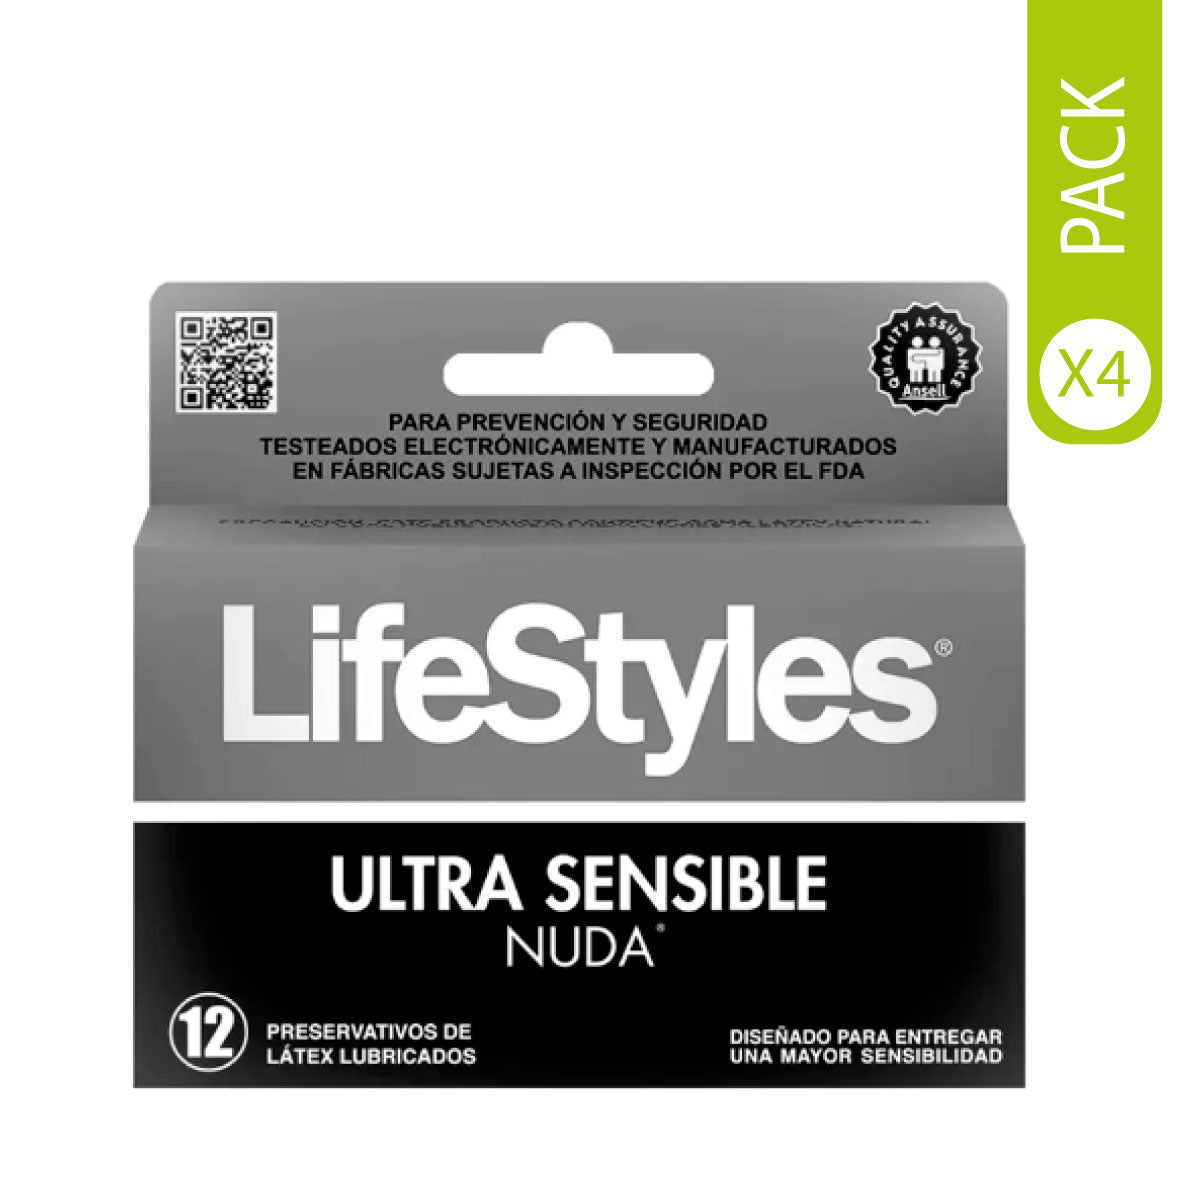 Pack de 4 cajas de 12 preservativos nuda lifestyles